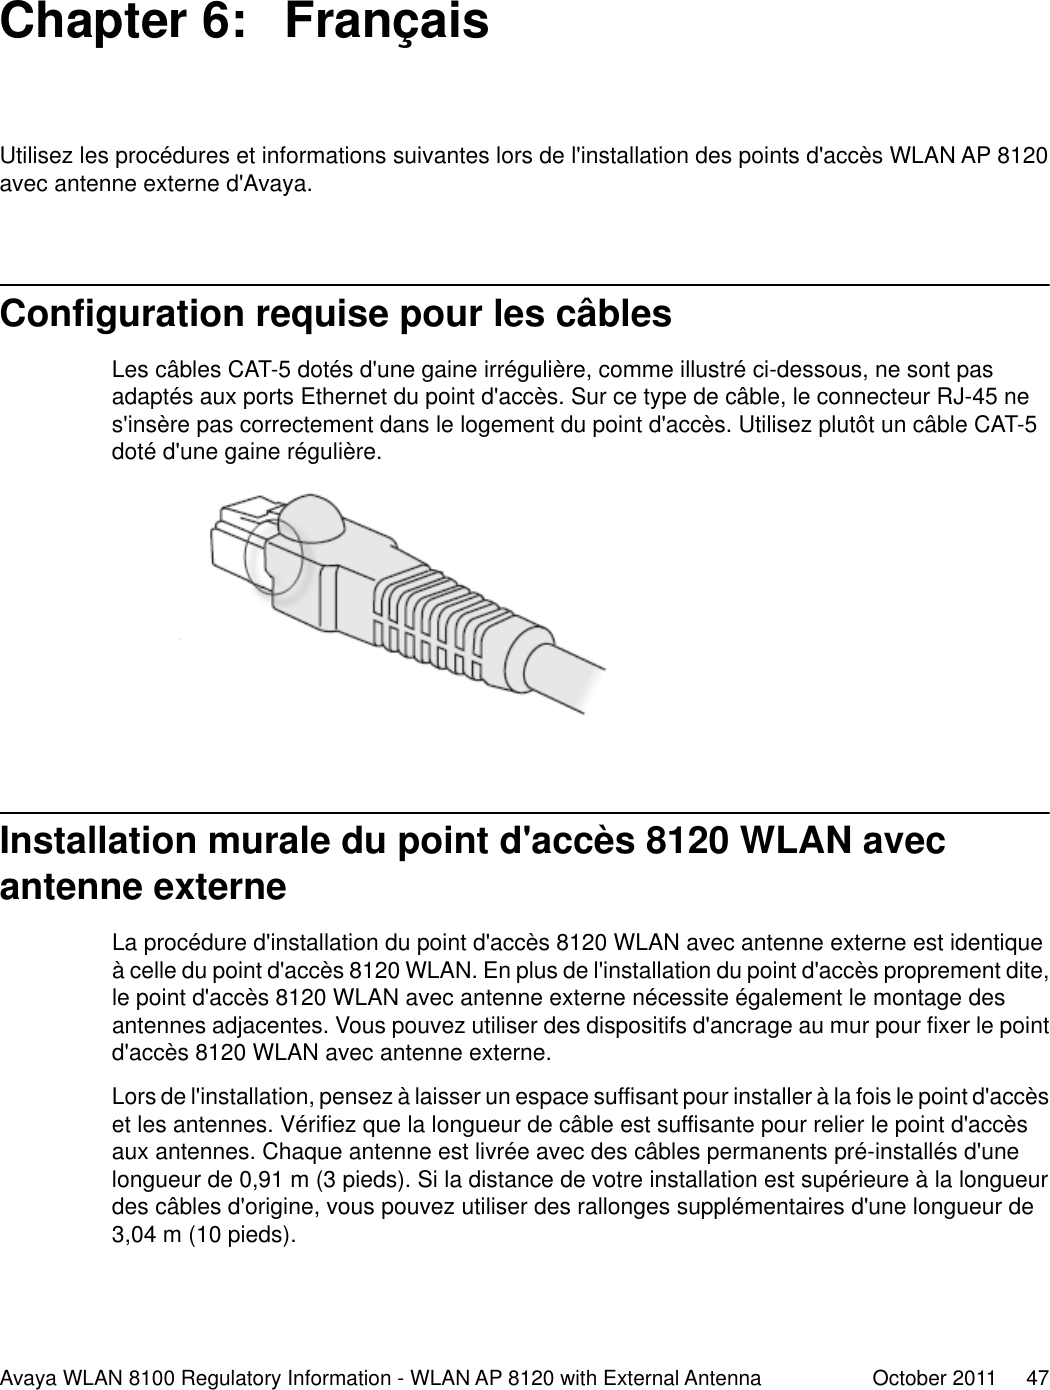 Chapter 6:  FrançaisUtilisez les procédures et informations suivantes lors de l&apos;installation des points d&apos;accès WLAN AP 8120avec antenne externe d&apos;Avaya.Configuration requise pour les câblesLes câbles CAT-5 dotés d&apos;une gaine irrégulière, comme illustré ci-dessous, ne sont pasadaptés aux ports Ethernet du point d&apos;accès. Sur ce type de câble, le connecteur RJ-45 nes&apos;insère pas correctement dans le logement du point d&apos;accès. Utilisez plutôt un câble CAT-5doté d&apos;une gaine régulière.Installation murale du point d&apos;accès 8120 WLAN avecantenne externeLa procédure d&apos;installation du point d&apos;accès 8120 WLAN avec antenne externe est identiqueà celle du point d&apos;accès 8120 WLAN. En plus de l&apos;installation du point d&apos;accès proprement dite,le point d&apos;accès 8120 WLAN avec antenne externe nécessite également le montage desantennes adjacentes. Vous pouvez utiliser des dispositifs d&apos;ancrage au mur pour fixer le pointd&apos;accès 8120 WLAN avec antenne externe.Lors de l&apos;installation, pensez à laisser un espace suffisant pour installer à la fois le point d&apos;accèset les antennes. Vérifiez que la longueur de câble est suffisante pour relier le point d&apos;accèsaux antennes. Chaque antenne est livrée avec des câbles permanents pré-installés d&apos;unelongueur de 0,91 m (3 pieds). Si la distance de votre installation est supérieure à la longueurdes câbles d&apos;origine, vous pouvez utiliser des rallonges supplémentaires d&apos;une longueur de3,04 m (10 pieds).Avaya WLAN 8100 Regulatory Information - WLAN AP 8120 with External Antenna October 2011     47